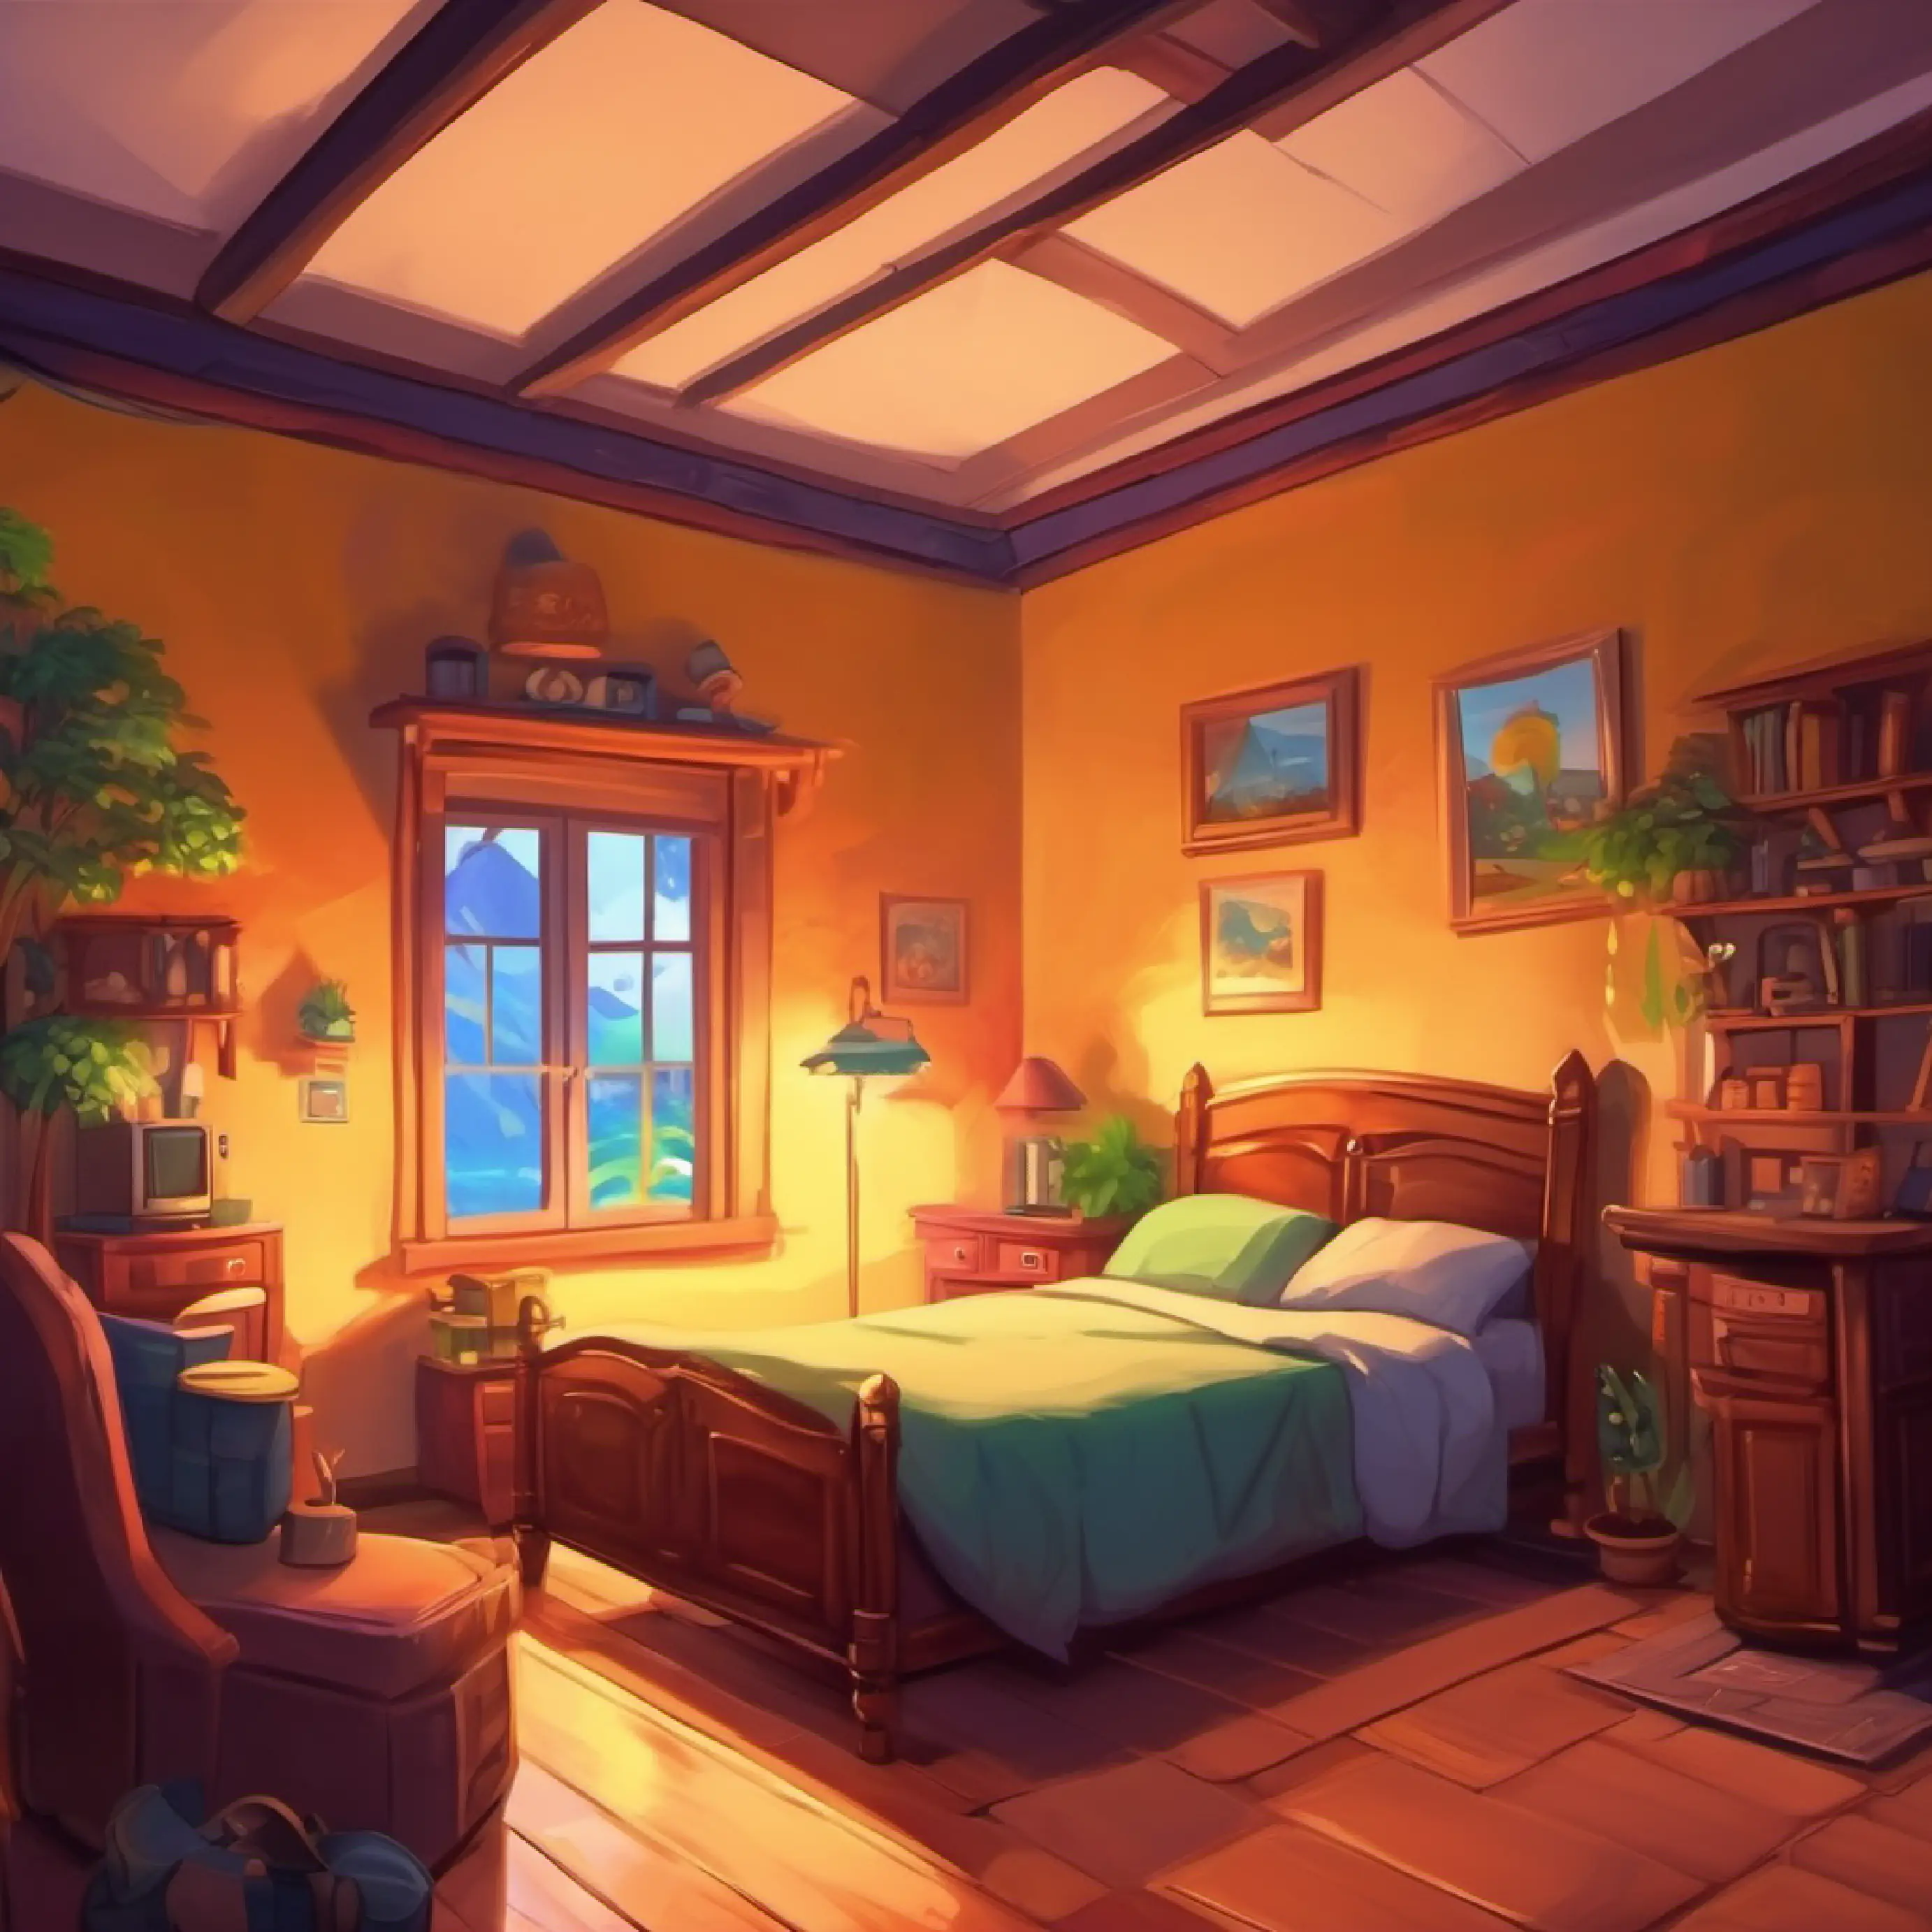 Video game adventure, in bedroom